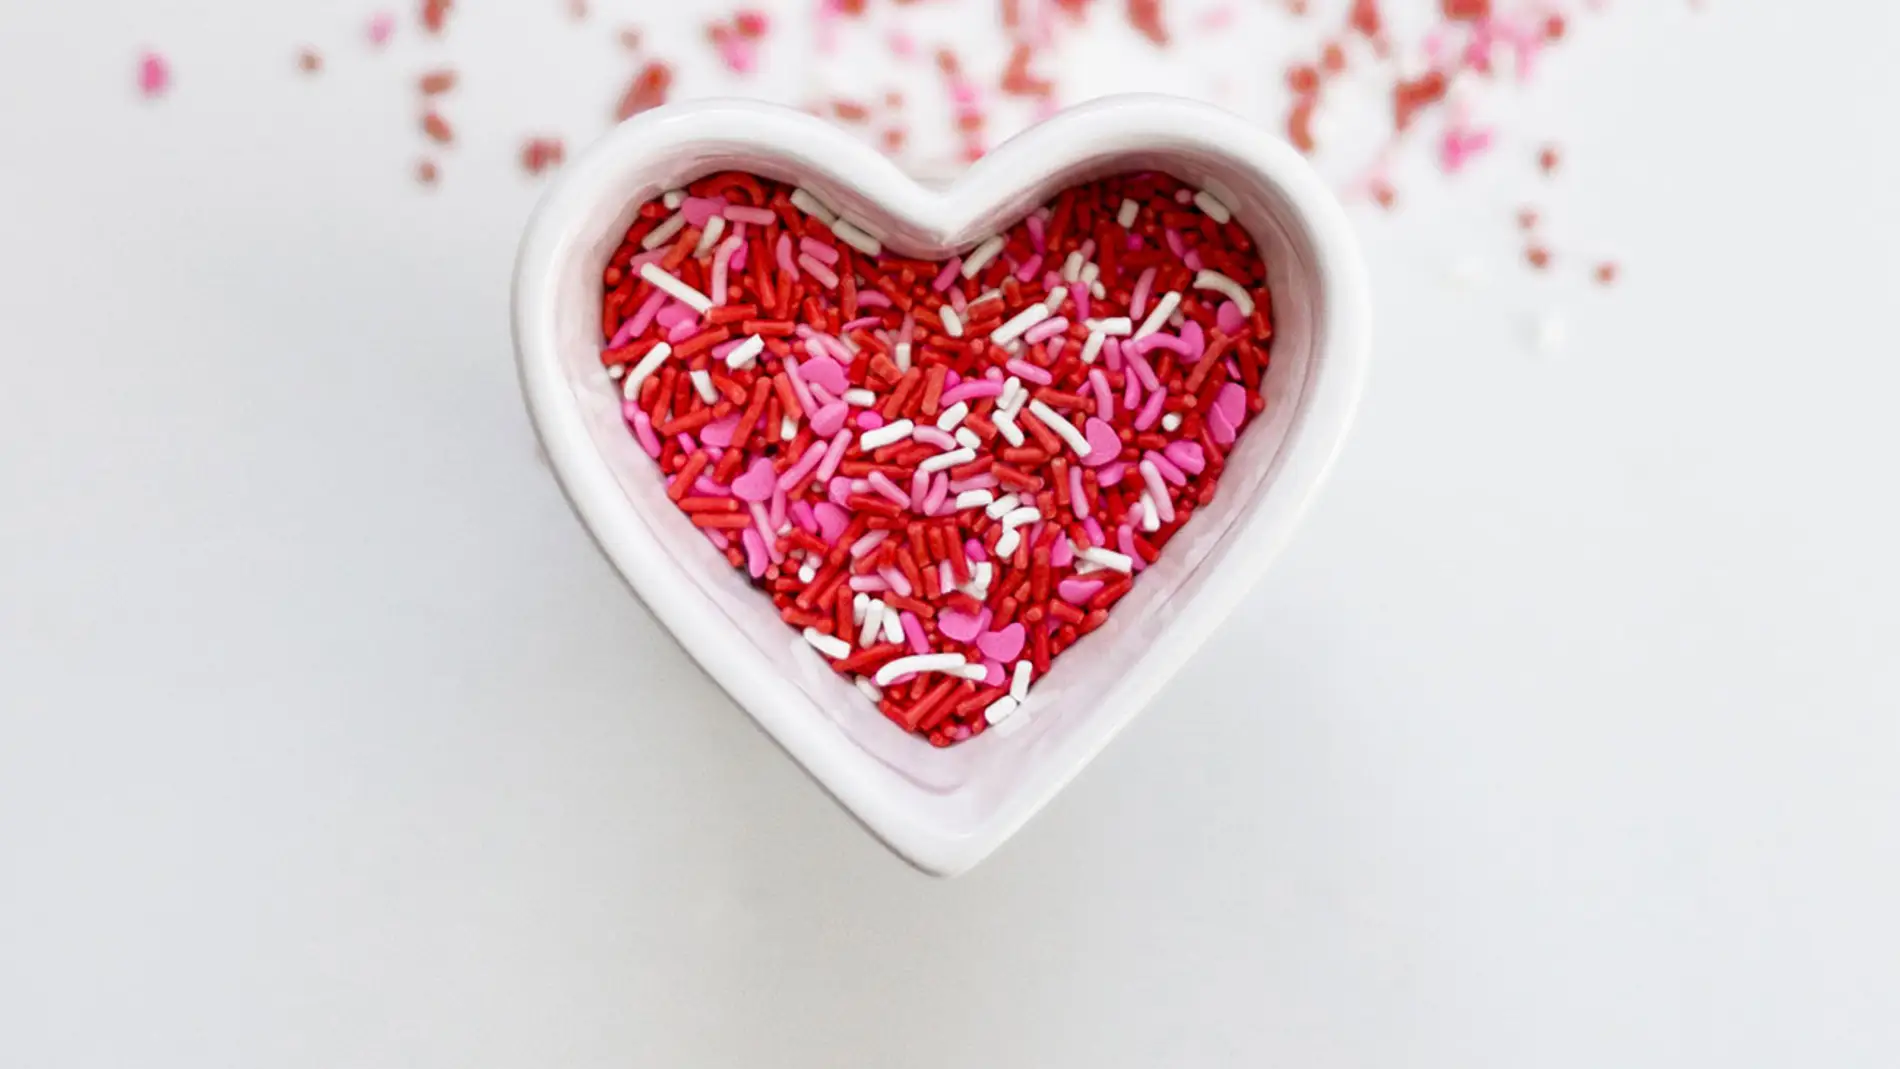 8 regalos originales para sorprender a tu pareja en San Valentín